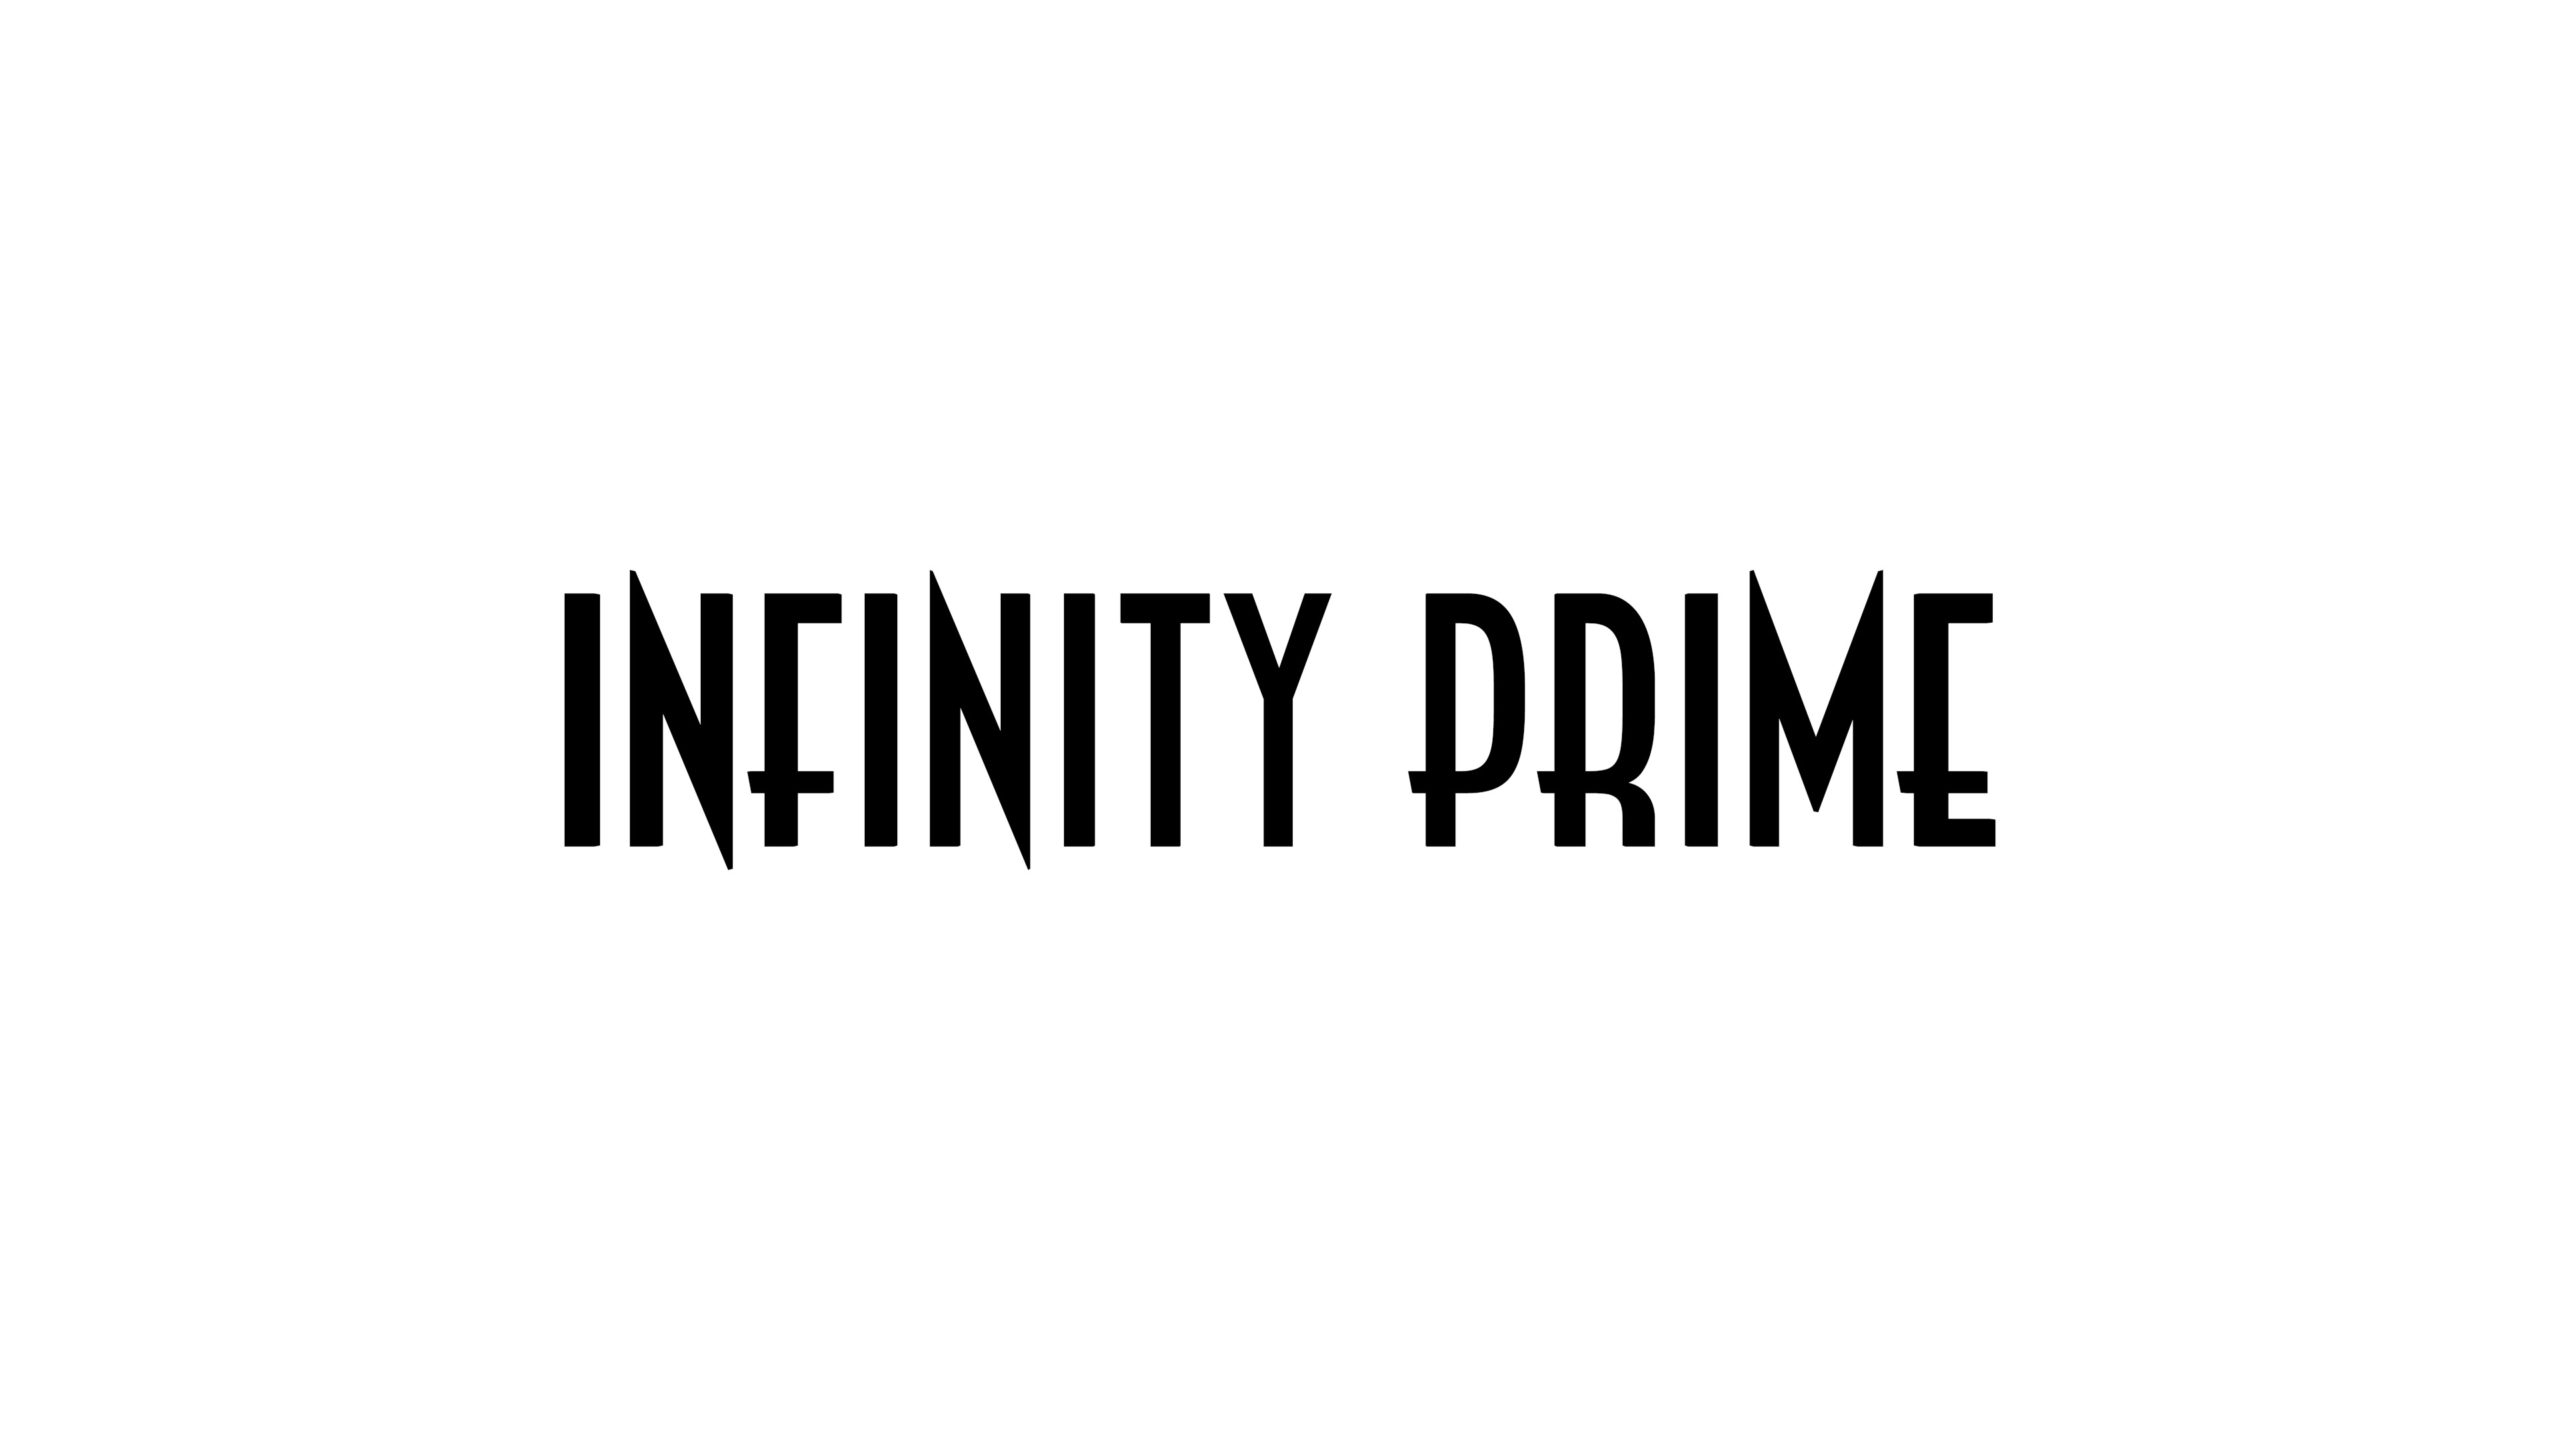 サブスクリプションパーソナルレッスン【infinity prime】のご案内